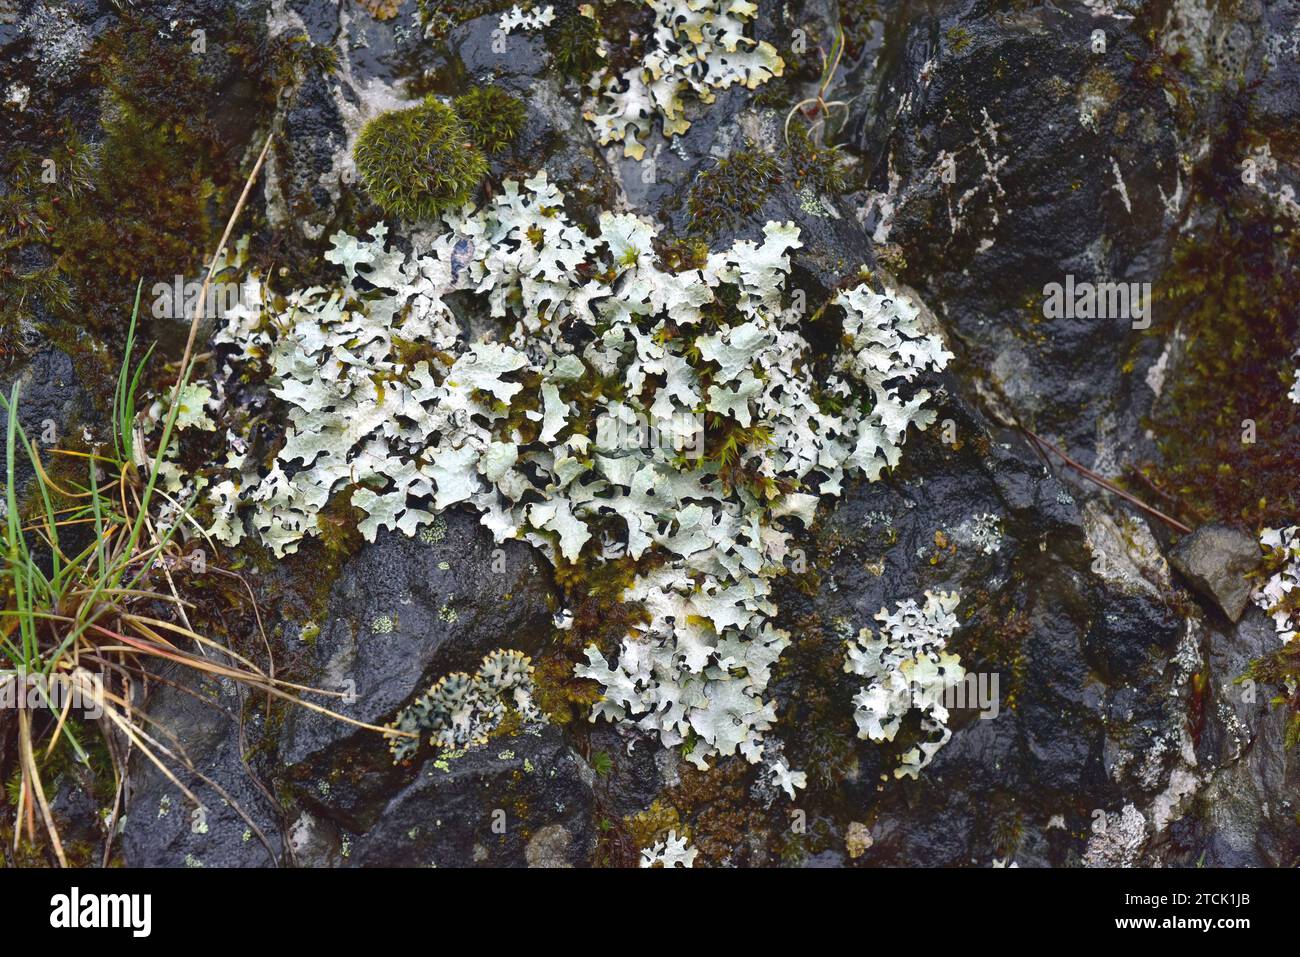 Foliose lichen (Parmelia sulcata) and black crustose lichen (Verrucaria sp.). This photo was taken in Babia, Leon province, Castilla-Leon, Spain. Stock Photo